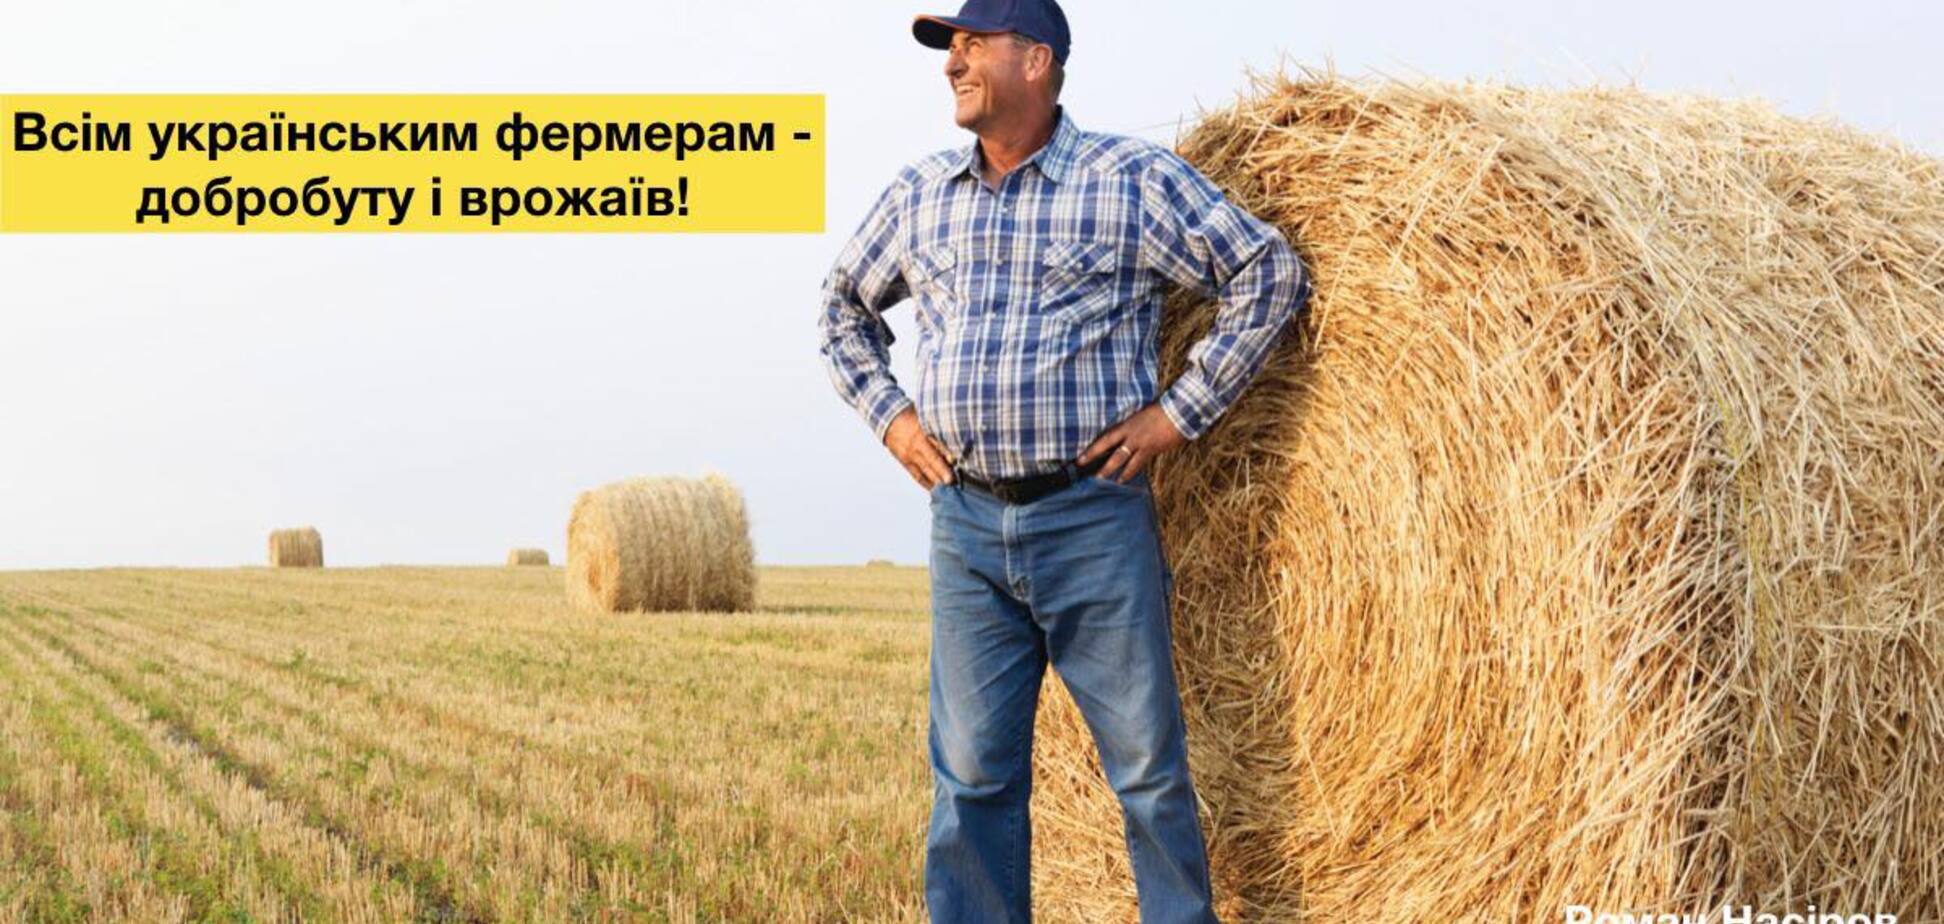 Всім українським фермерам - добробуту і врожаїв!